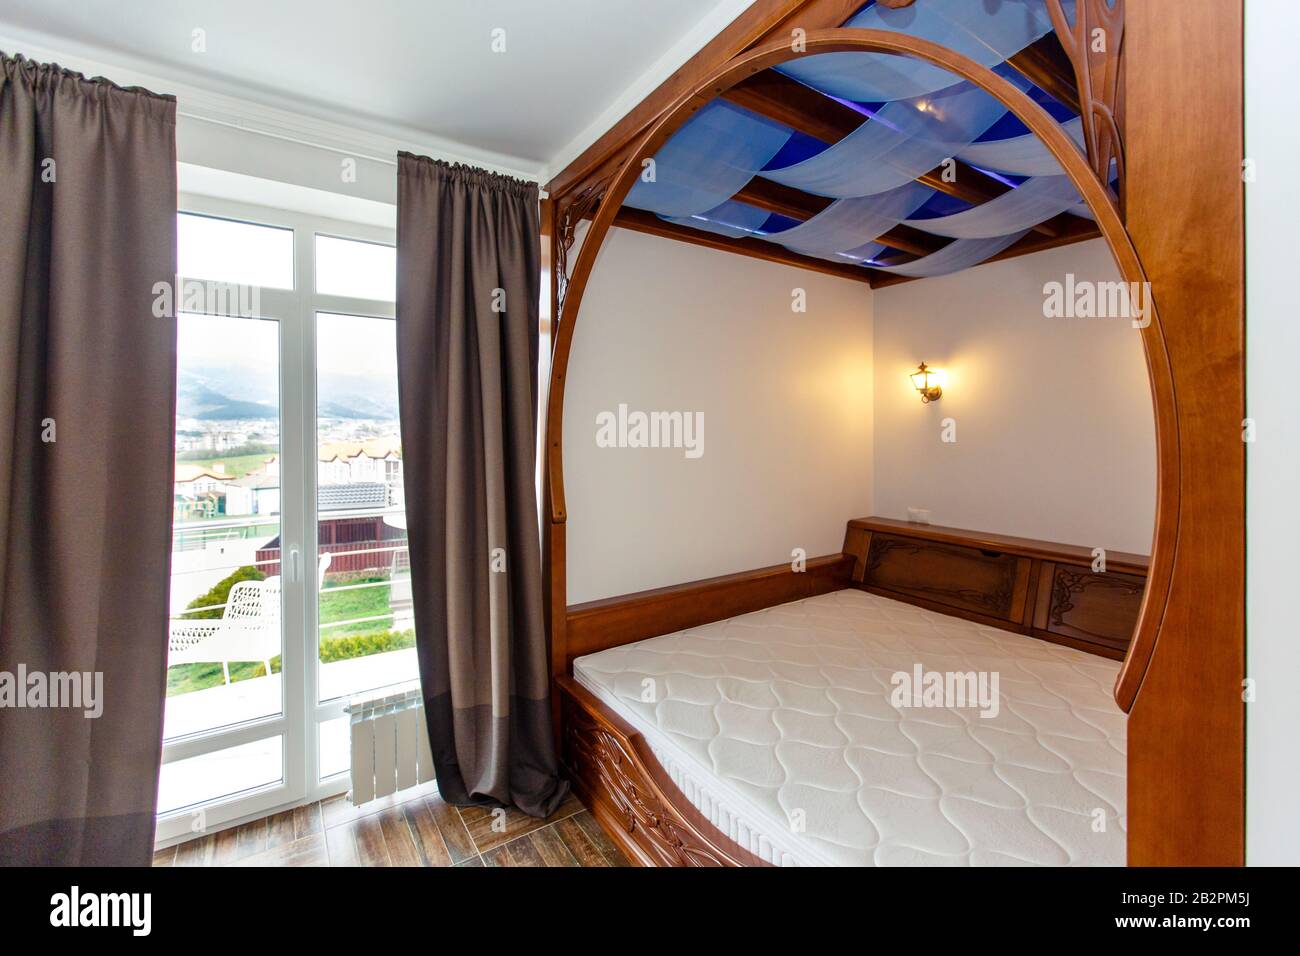 Schlafzimmer im Cottage mit einem großen Holz-Himmelbett. Das Bett ist in  die Wand integriert. Beige Fliesen auf dem Boden Stockfotografie - Alamy